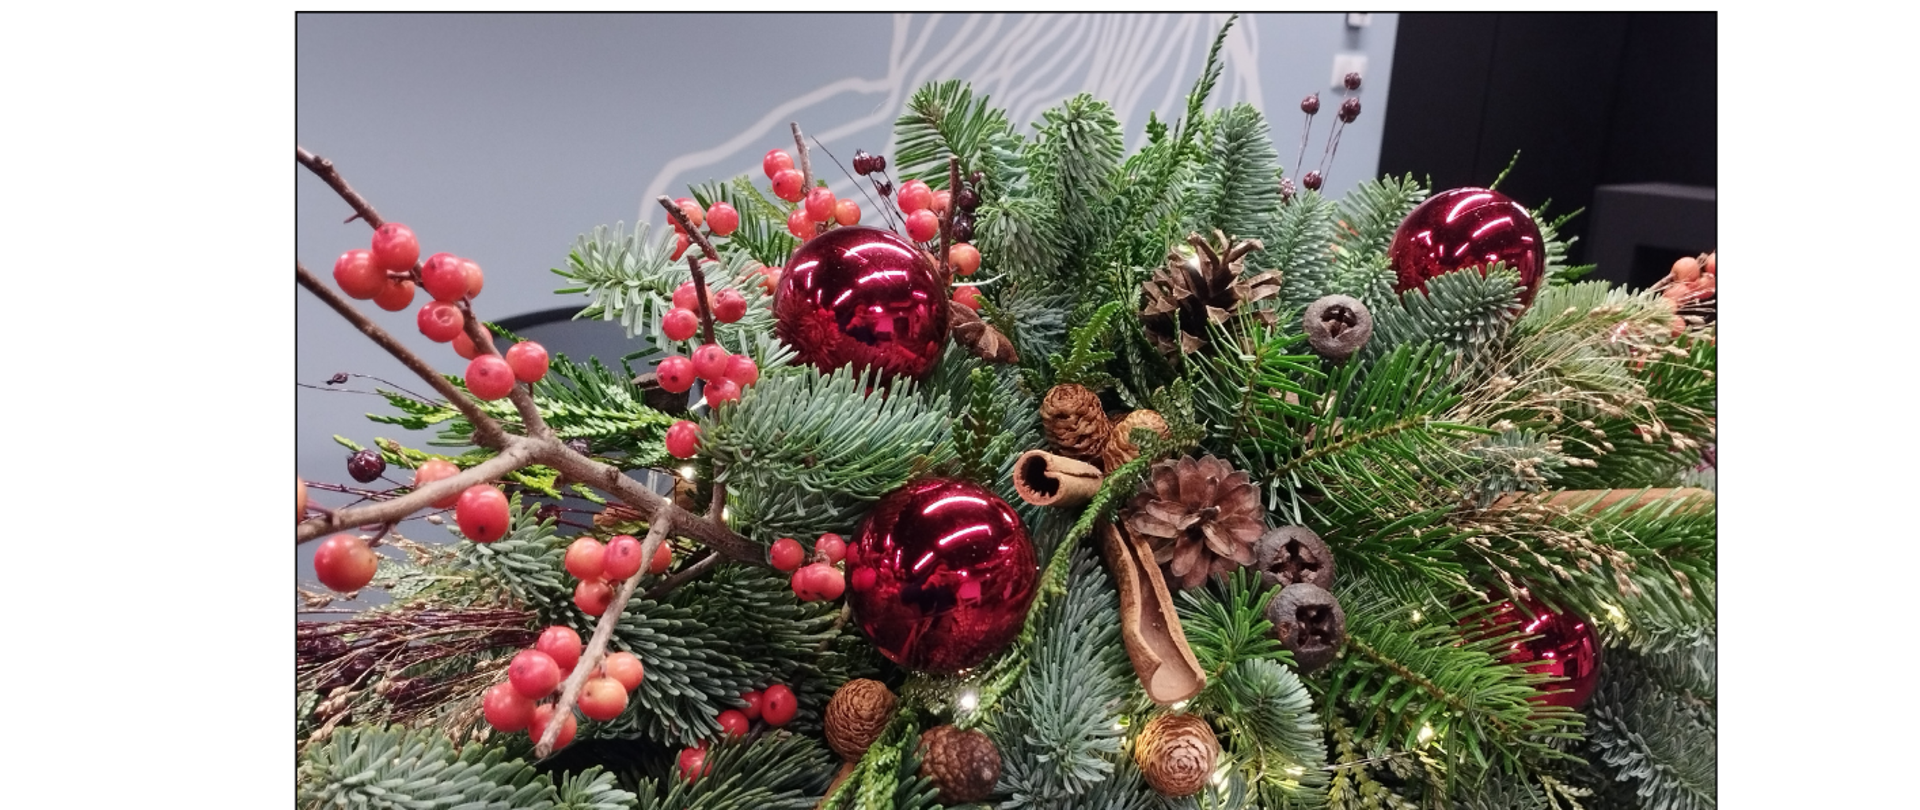 Na białym tle tekst życzen świątecznych w kolorze fioletowym, poniżej zdjęcie stroika świątecznego, pod zdjęciem tekst informujący o koncertach kolędowych 21 i 22 grudnia o godzinie 17.00 w auli.